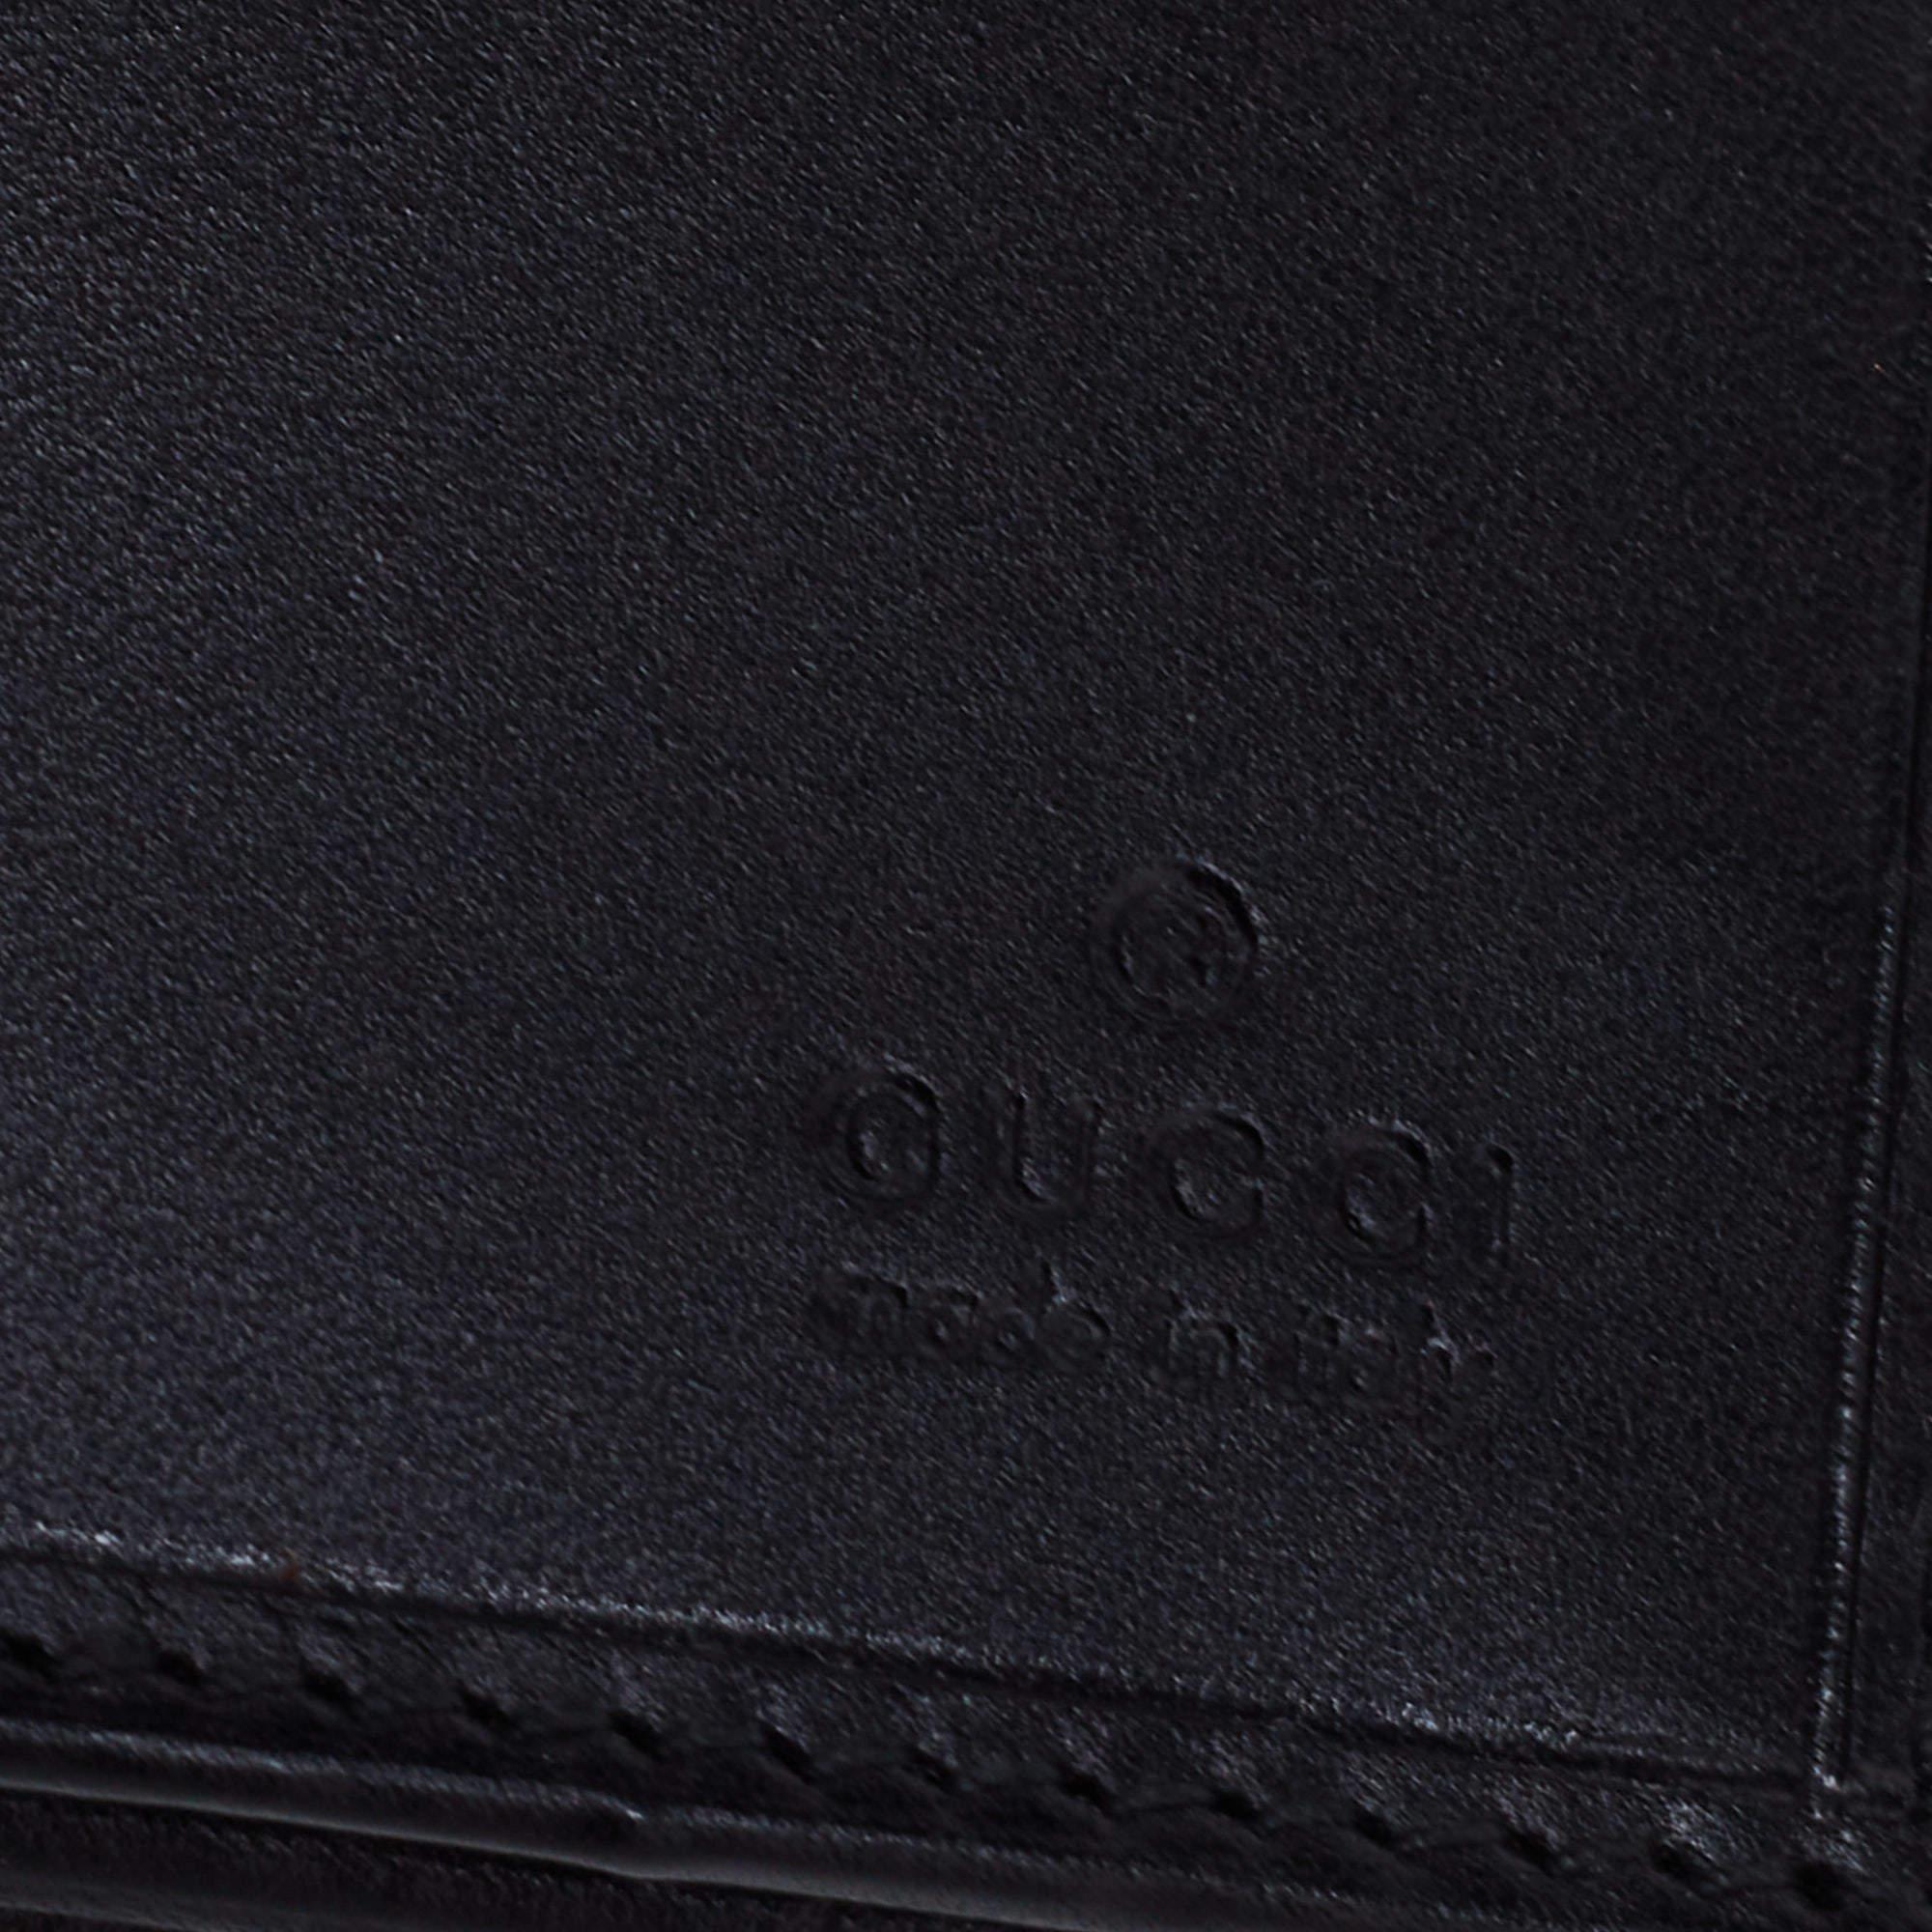 Gucci Black Suede And Canvas Web Wallet 9